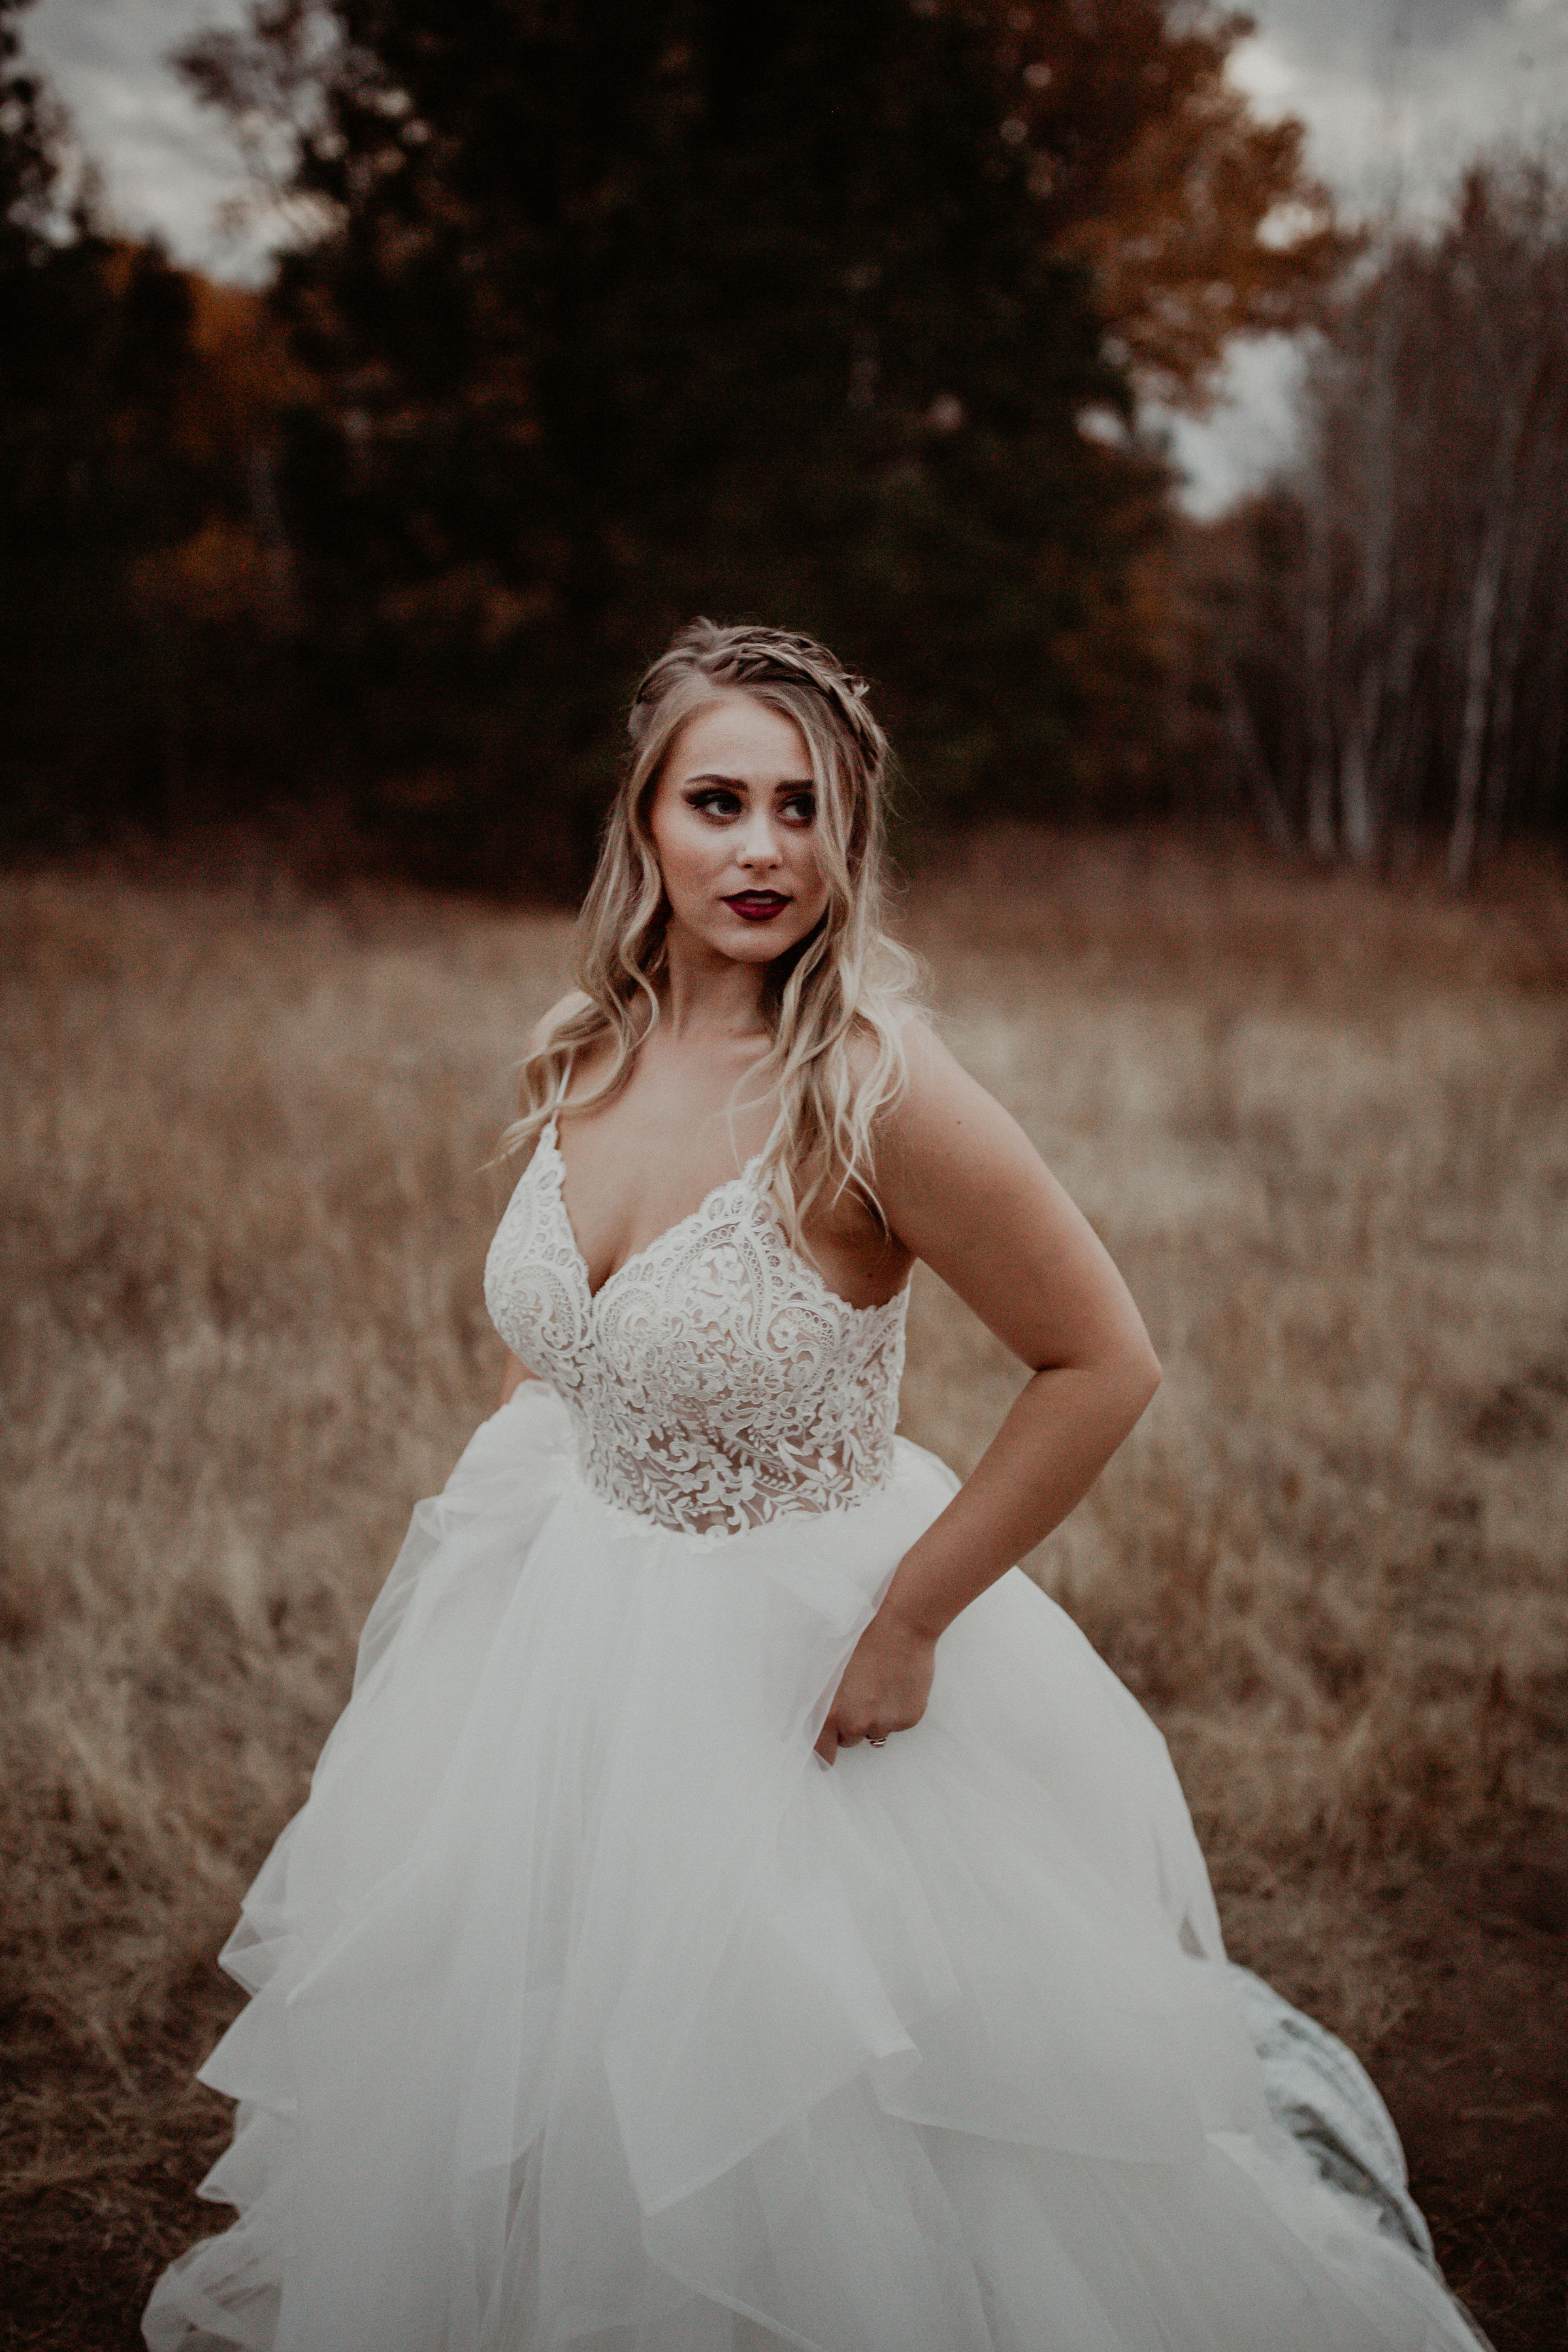 Wedding dress in a Spokane field blonde